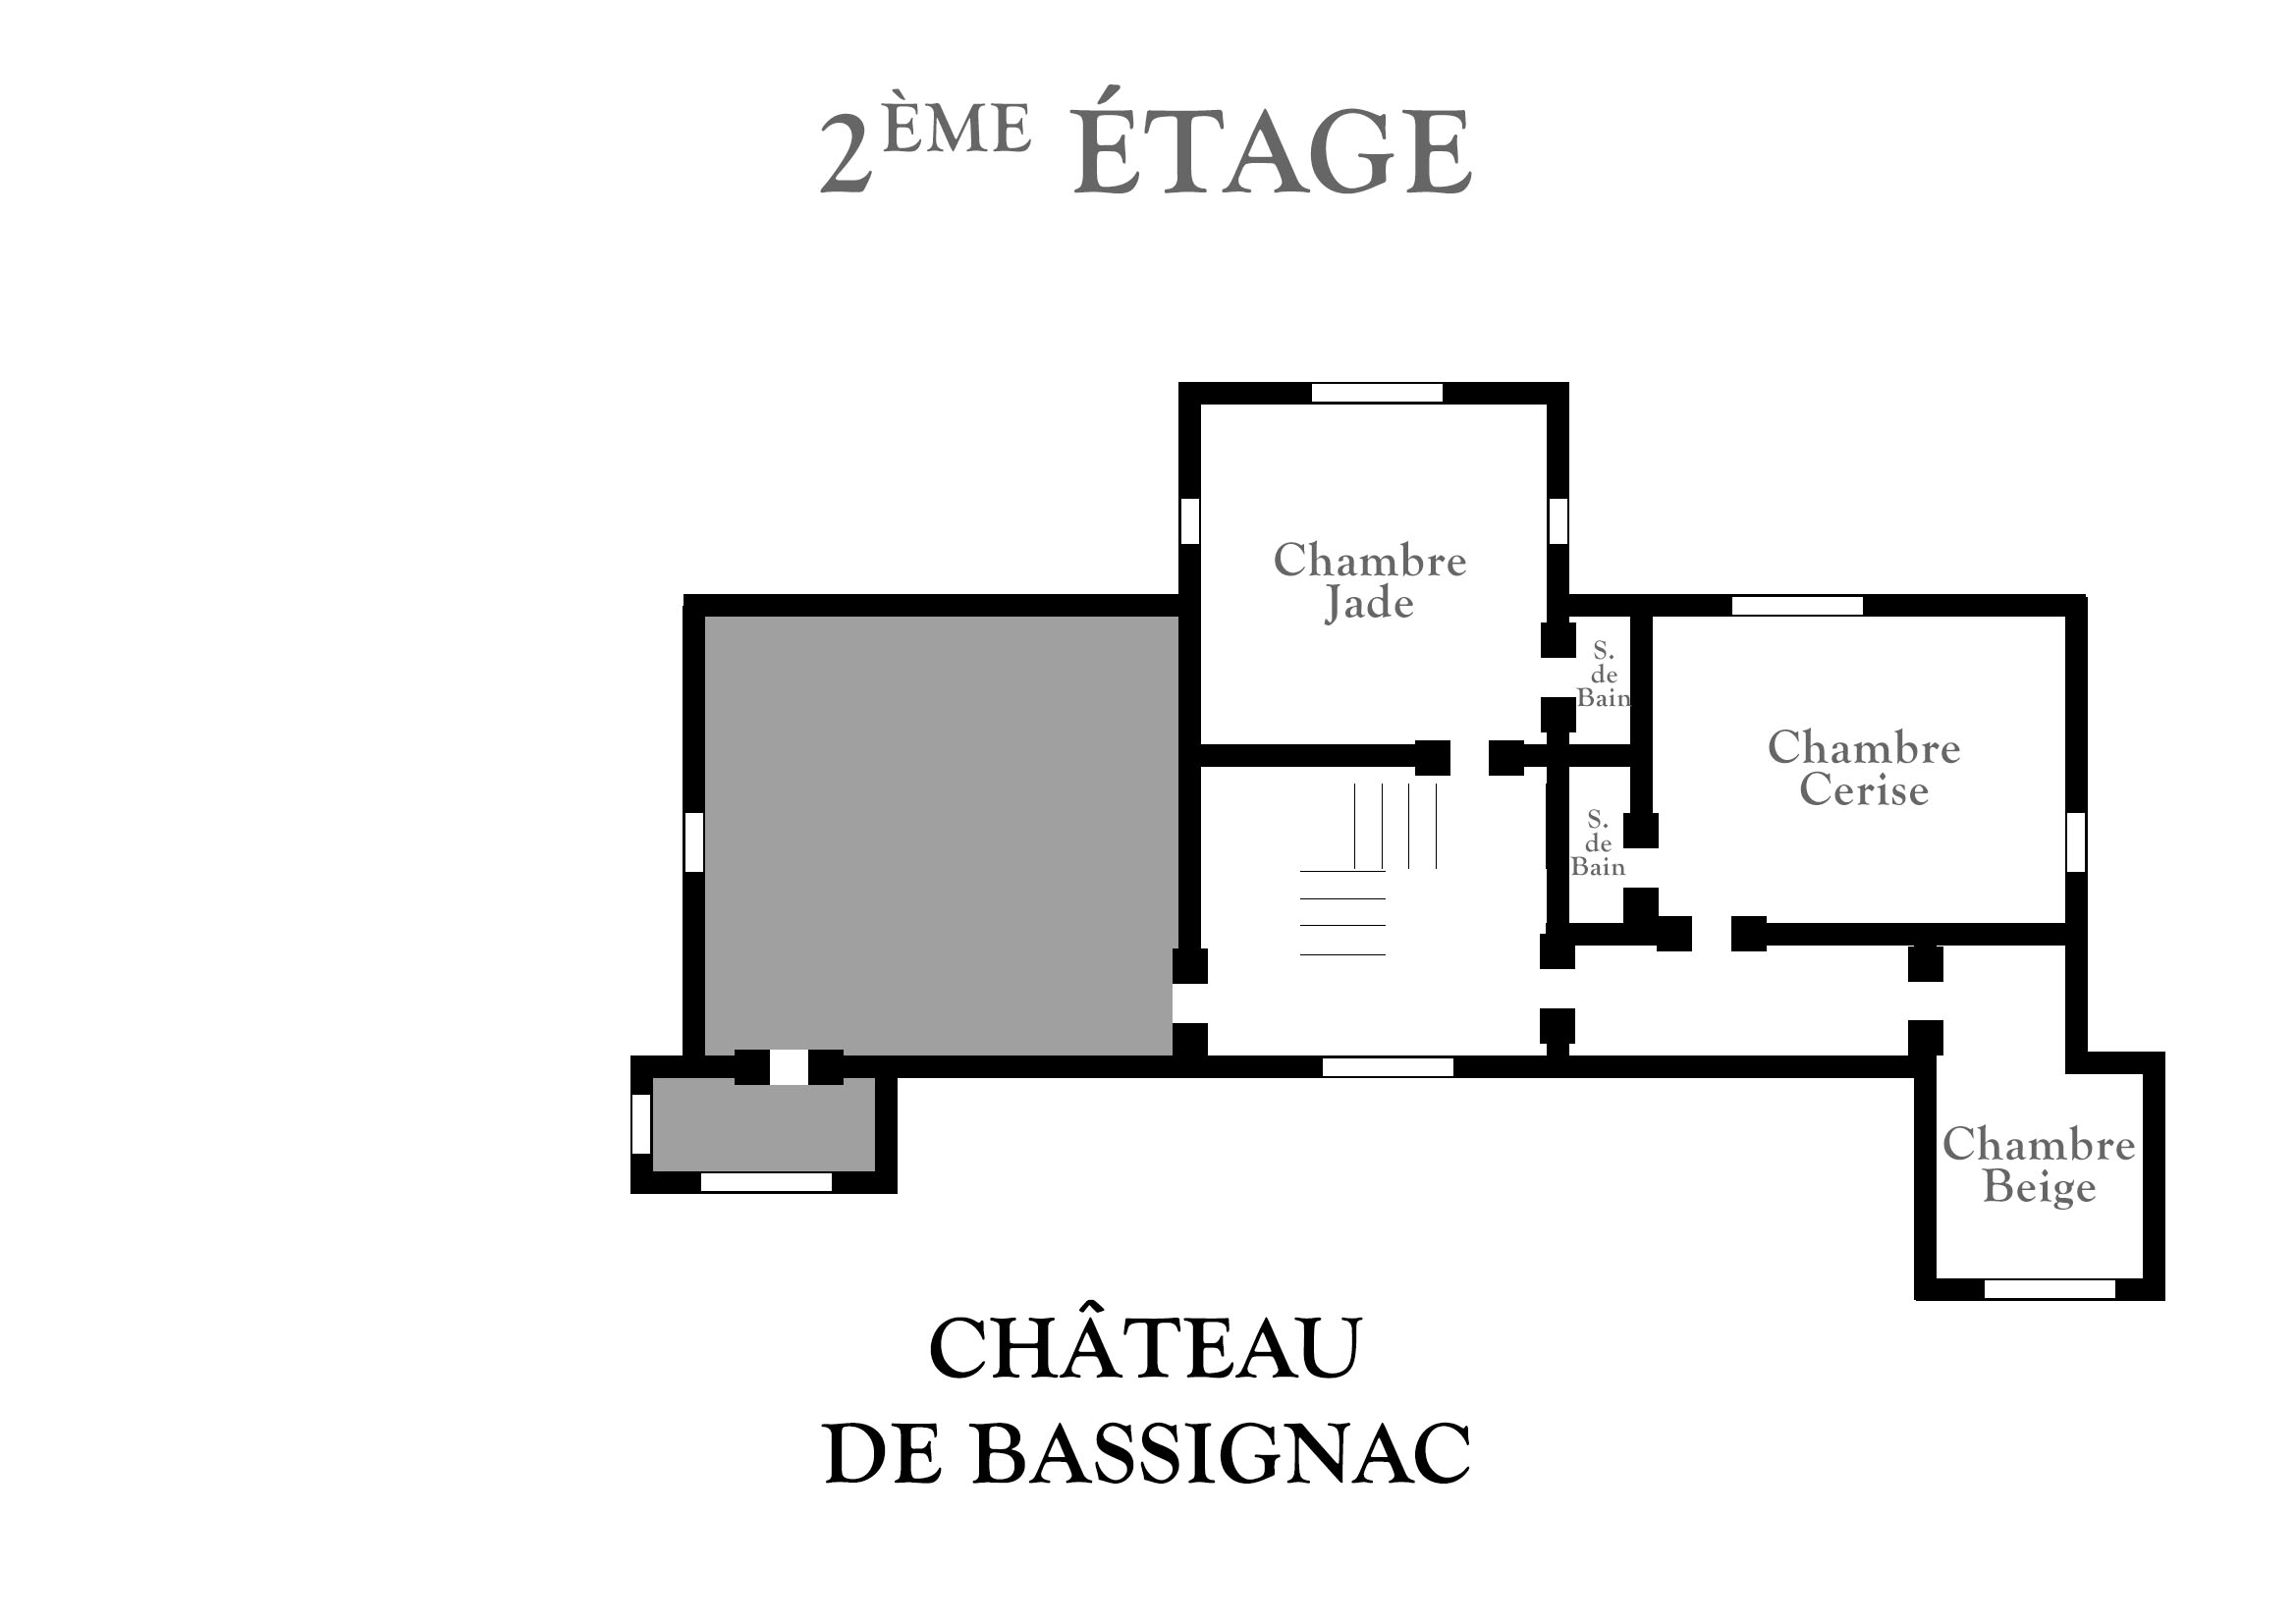 Plan du deuxième étage